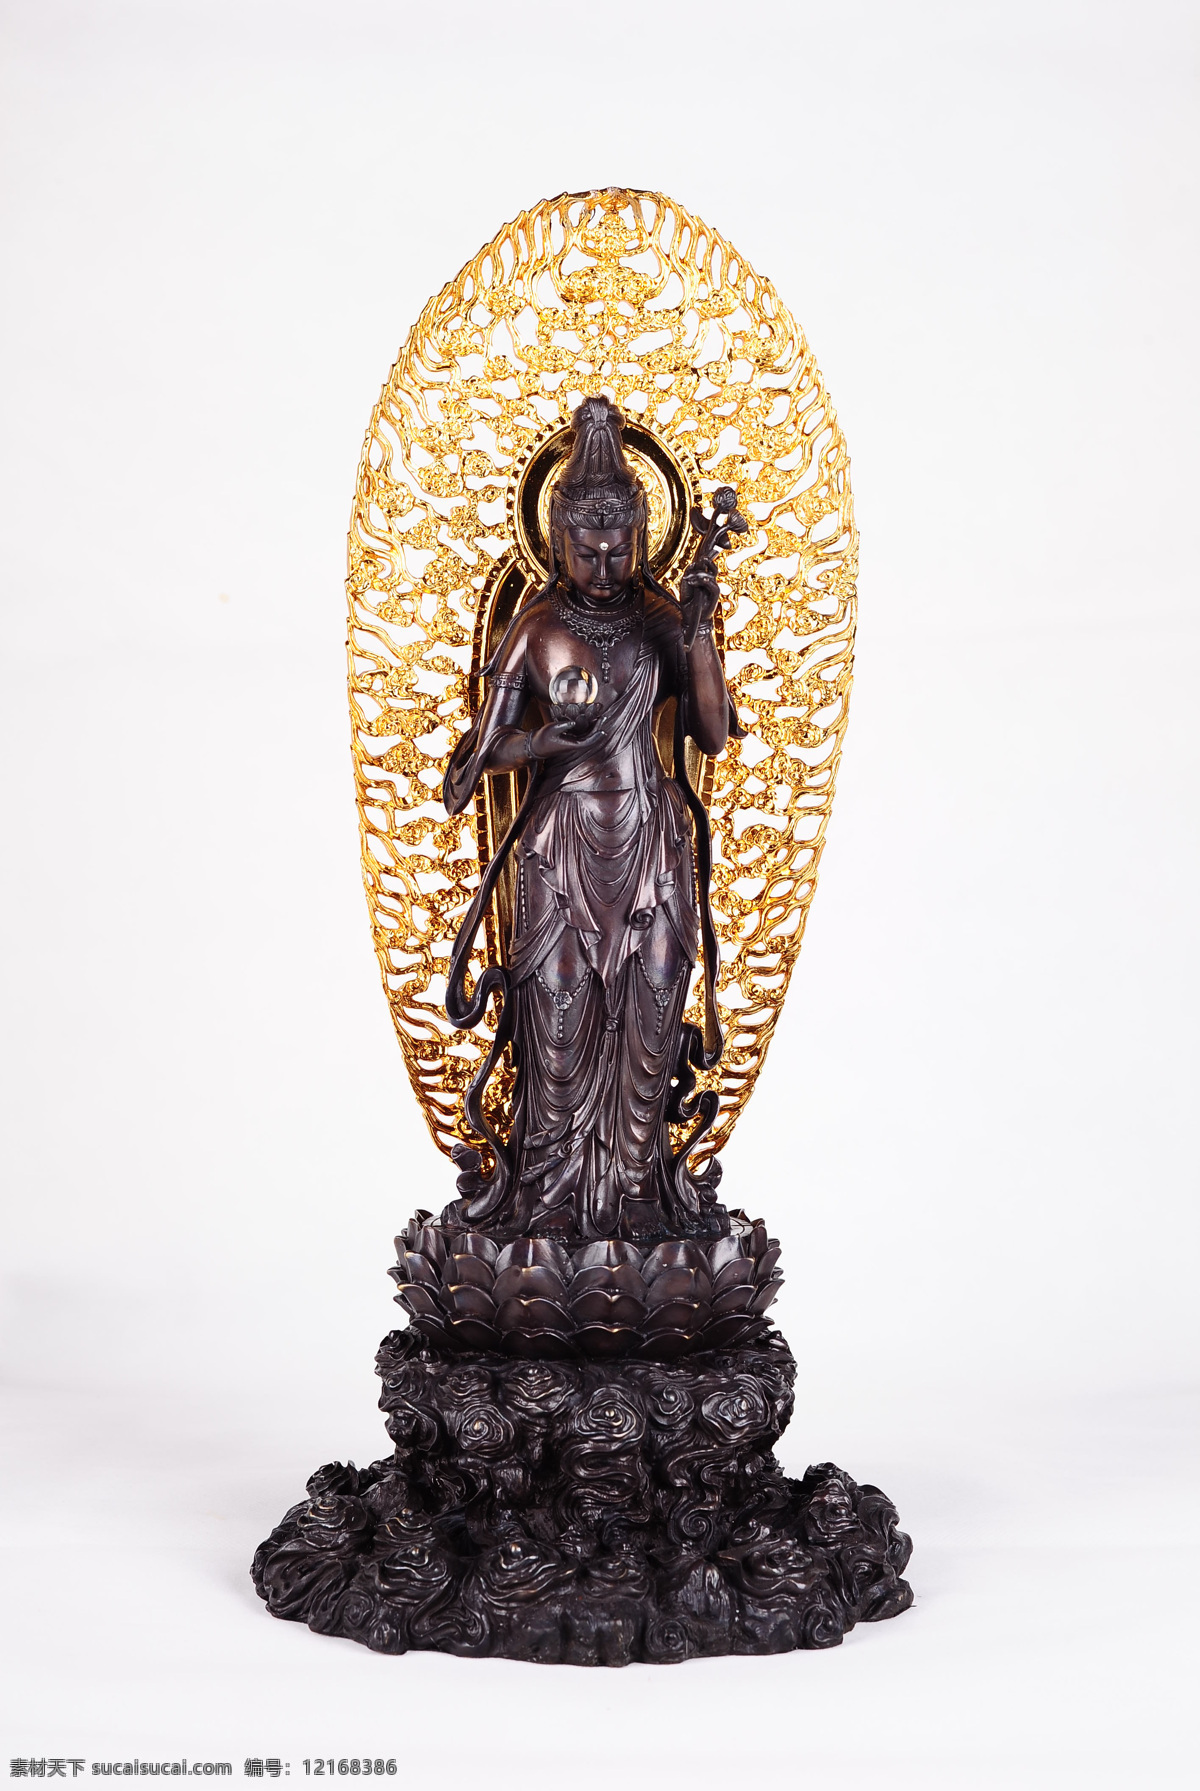 佛像摄影 佛教 文化艺术 雕刻艺术 佛像艺术 传统文化